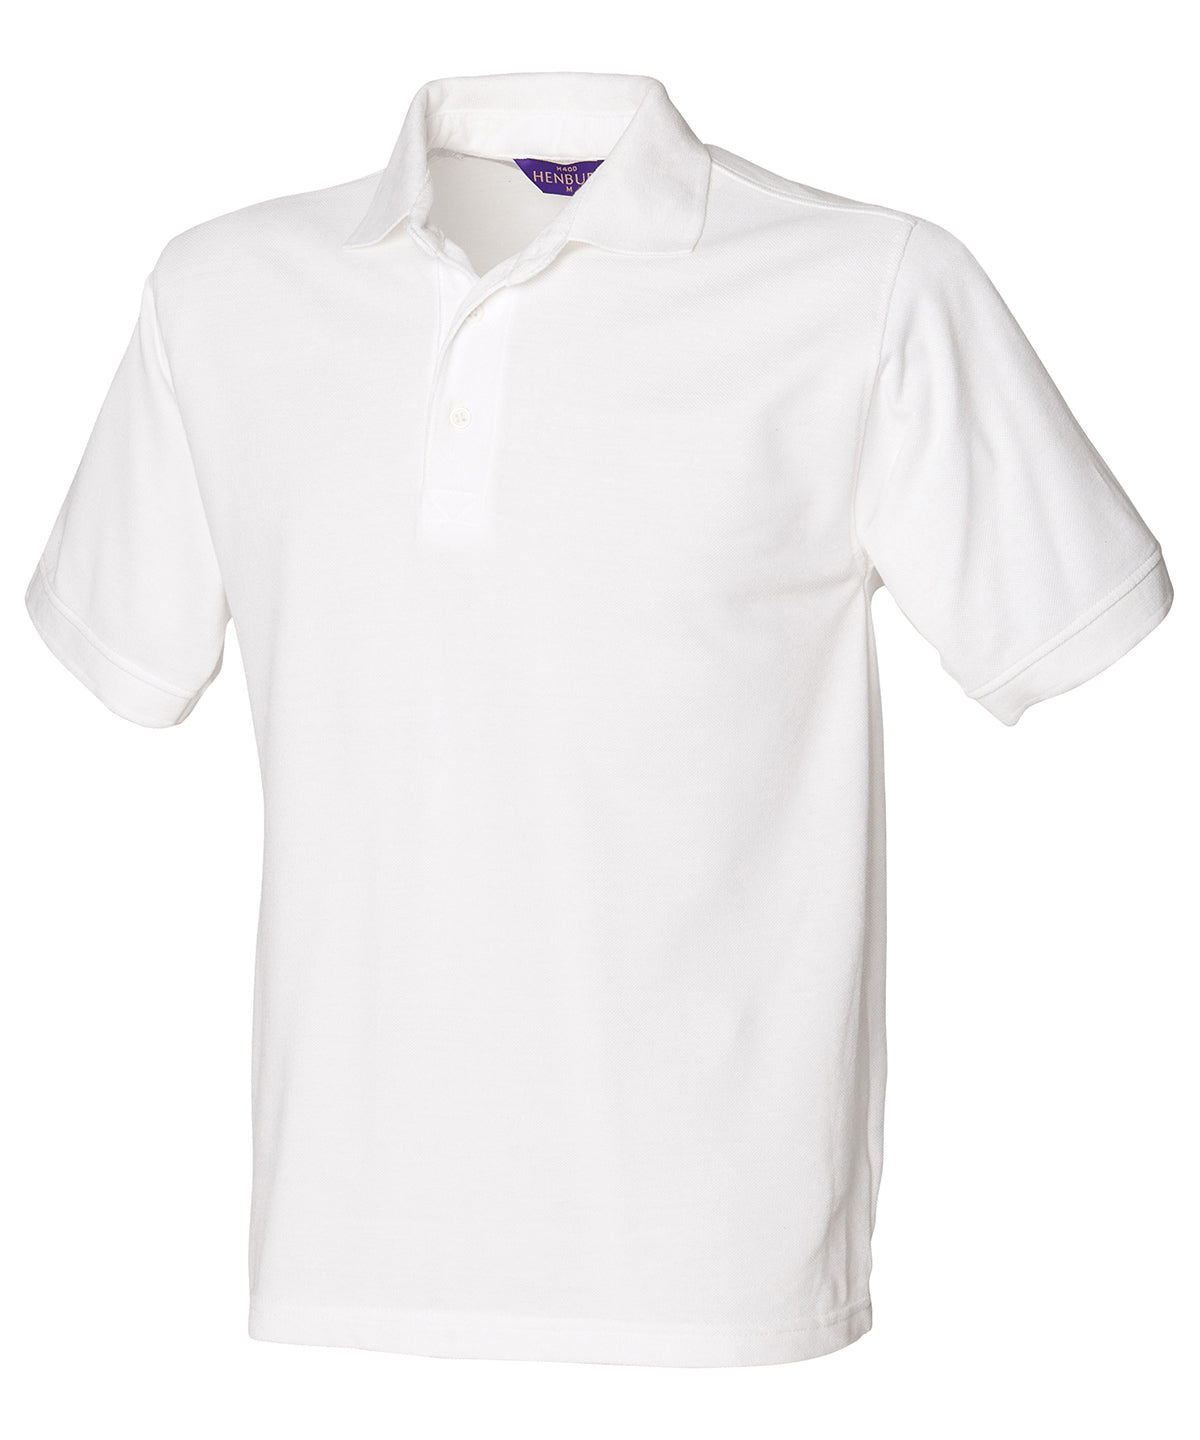 Personalised Polo Shirts - Royal Henbury 65/35 Classic piqué polo shirt